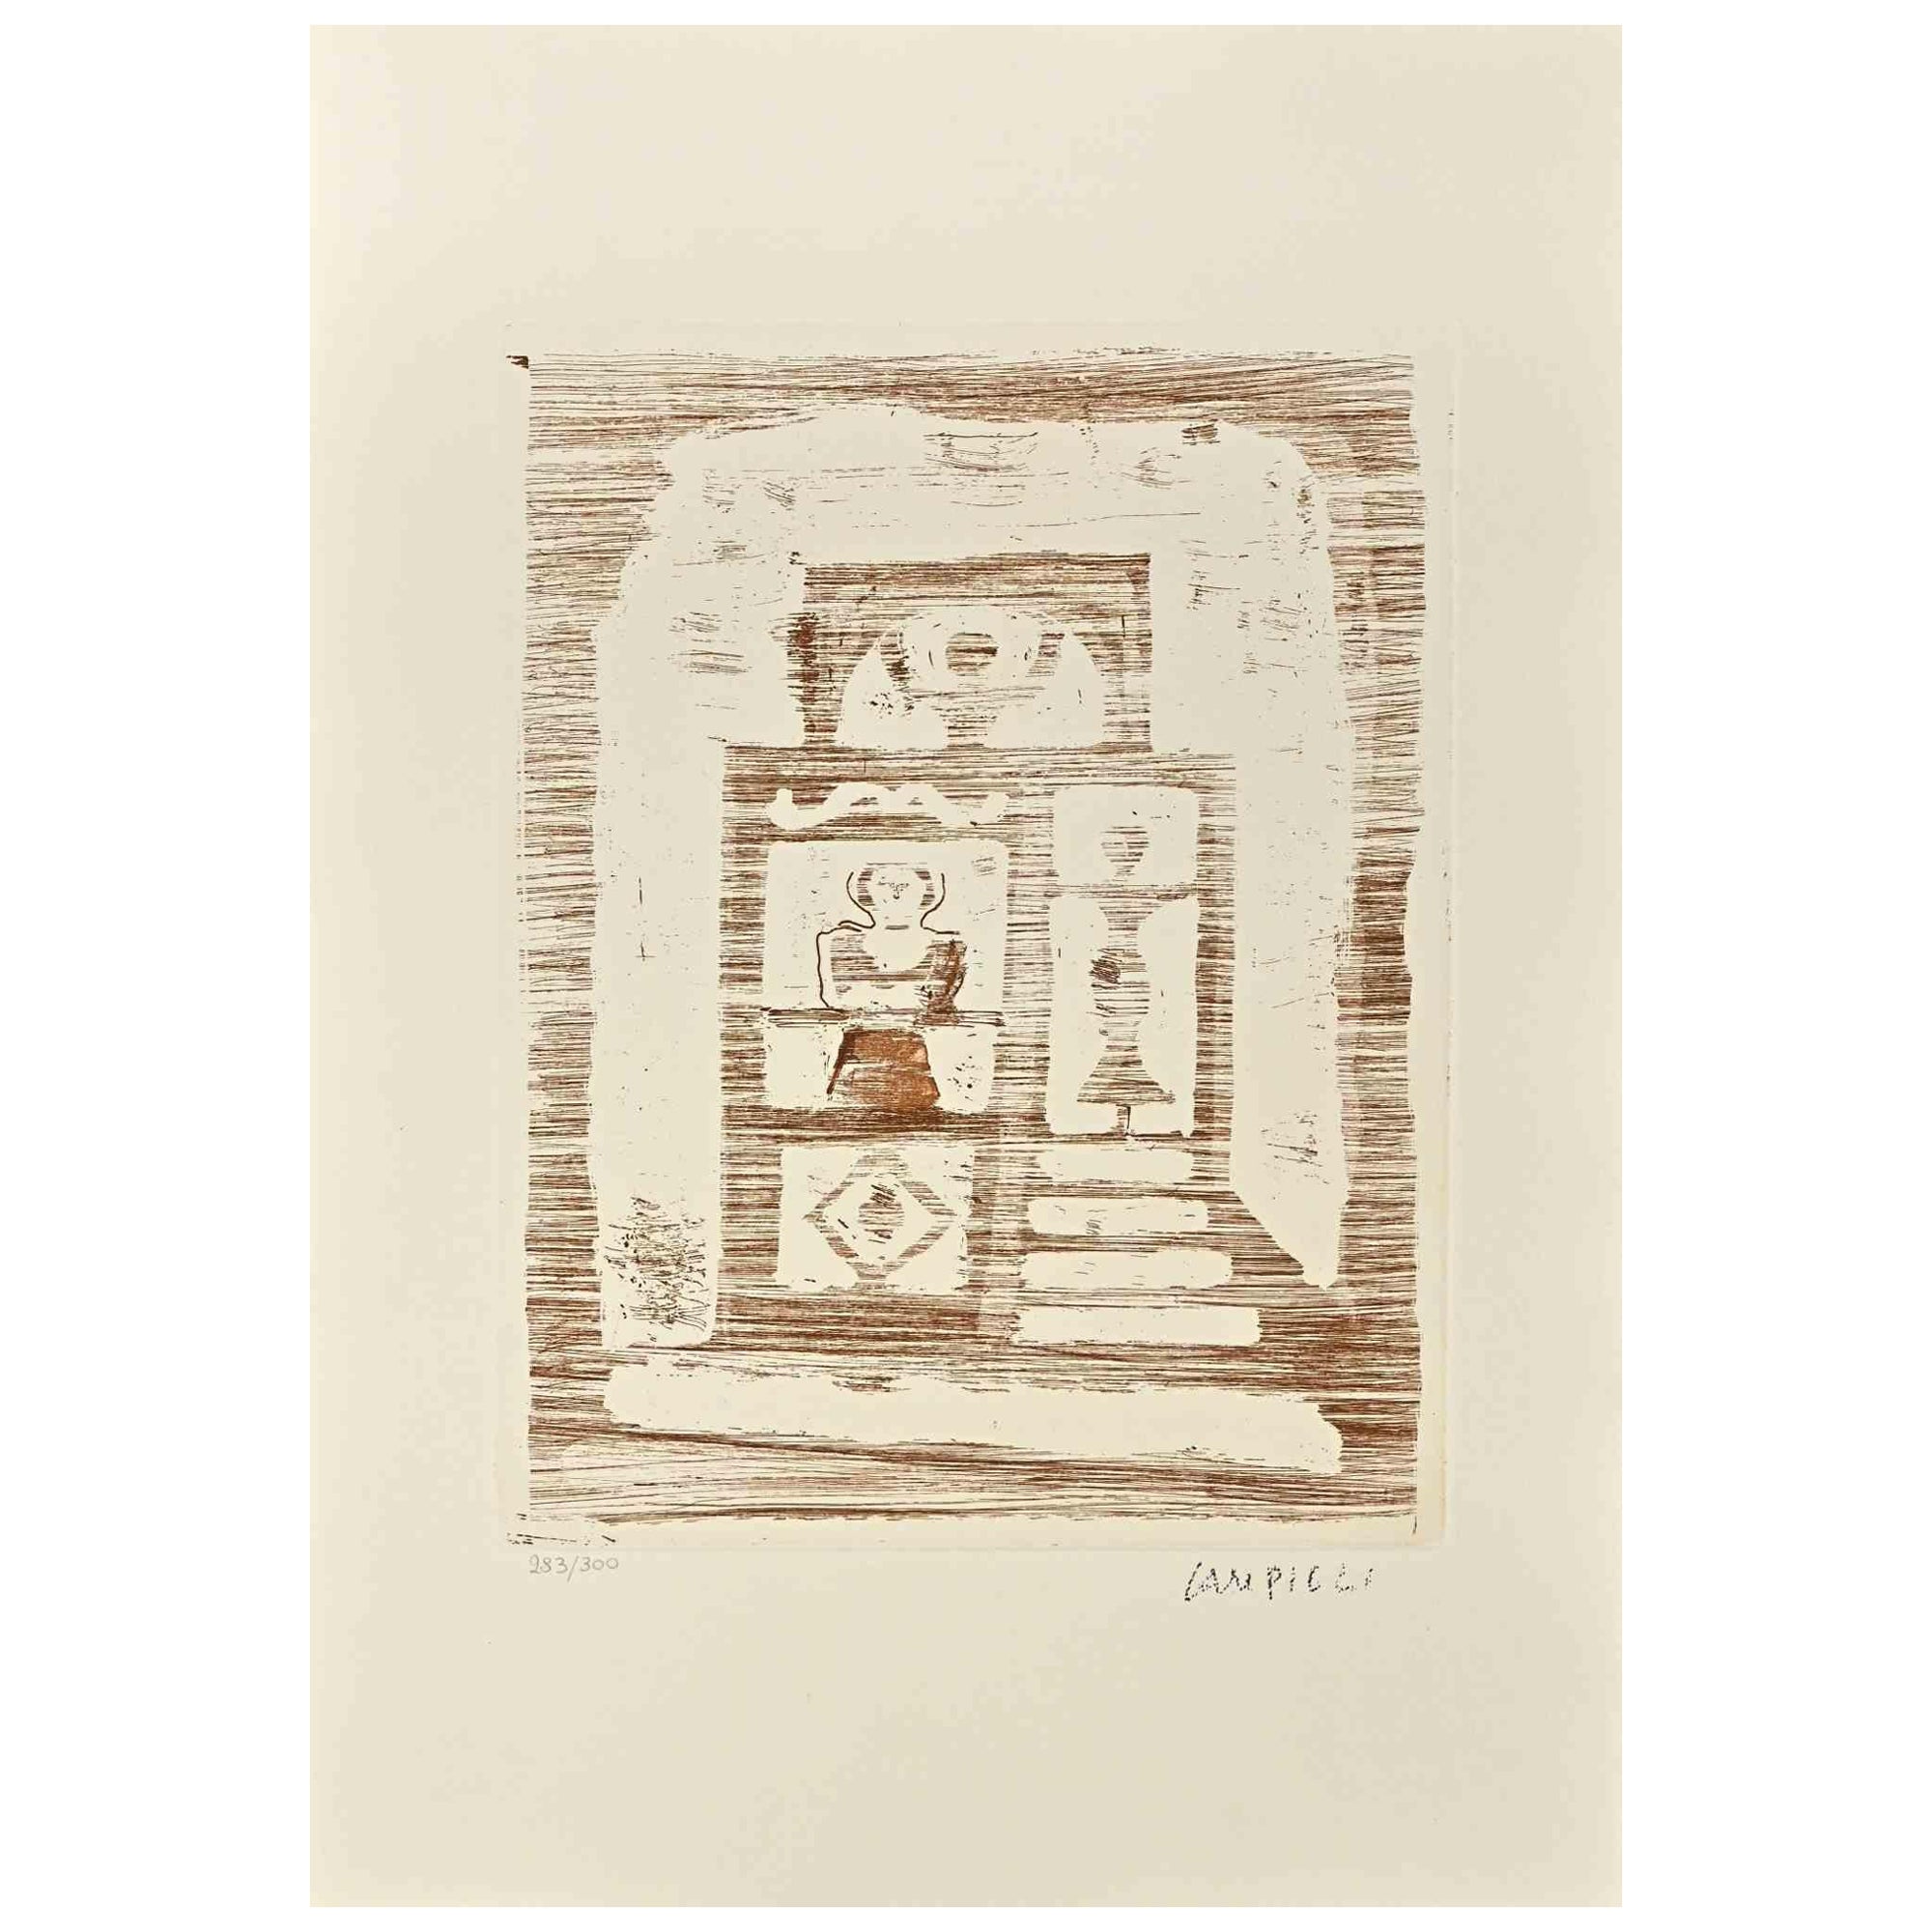 Das Haus der Frauen  ist ein Originaldruck, der in den 1970er Jahren nach Massimo Campigli entstand.

Radierung auf Papier.

Dieses Kunstwerk gehört zu einer Reihe von Werken, die in der letzten Schaffensperiode des Künstlers entstanden sind und zur